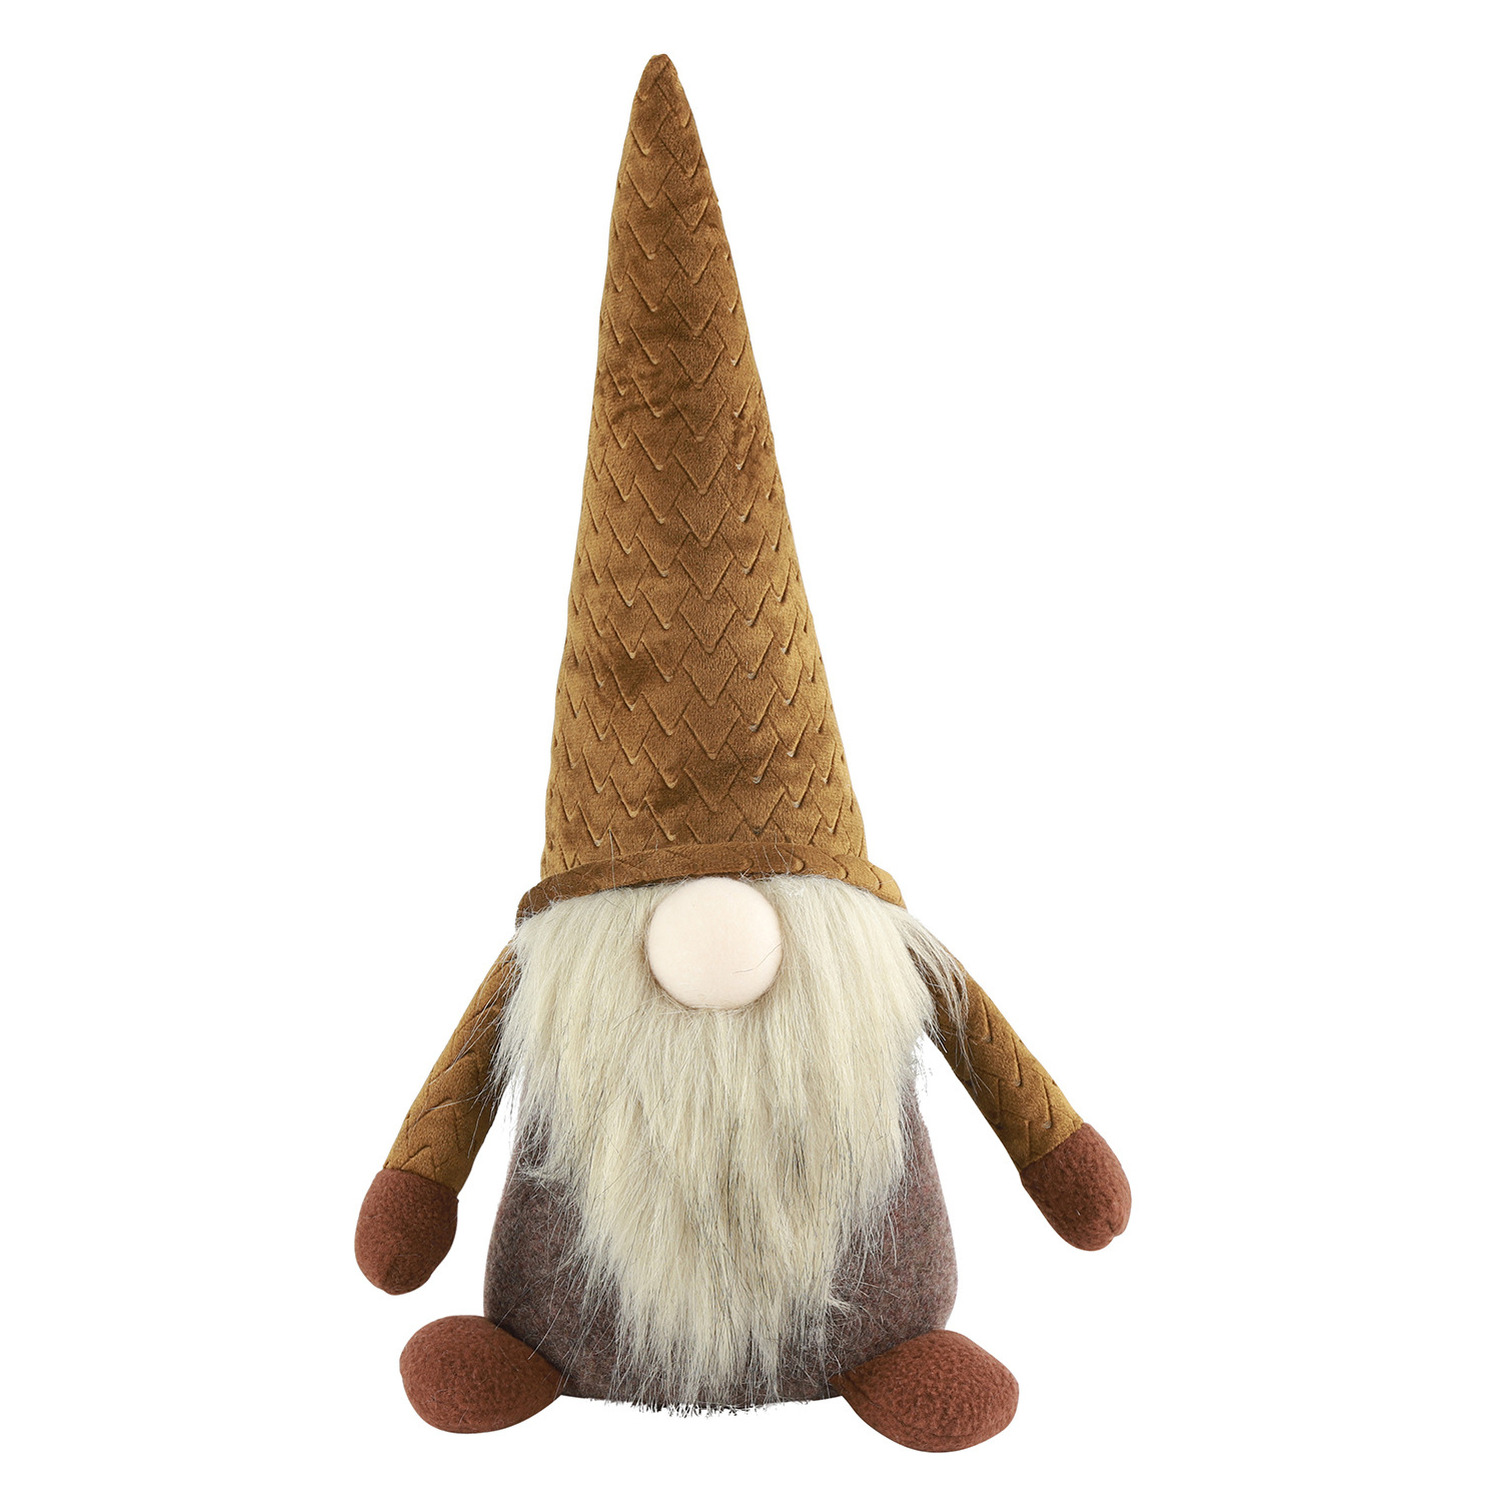 Countryfield pluche knuffel gnome-dwerg decoratie pop -38 cm bruin